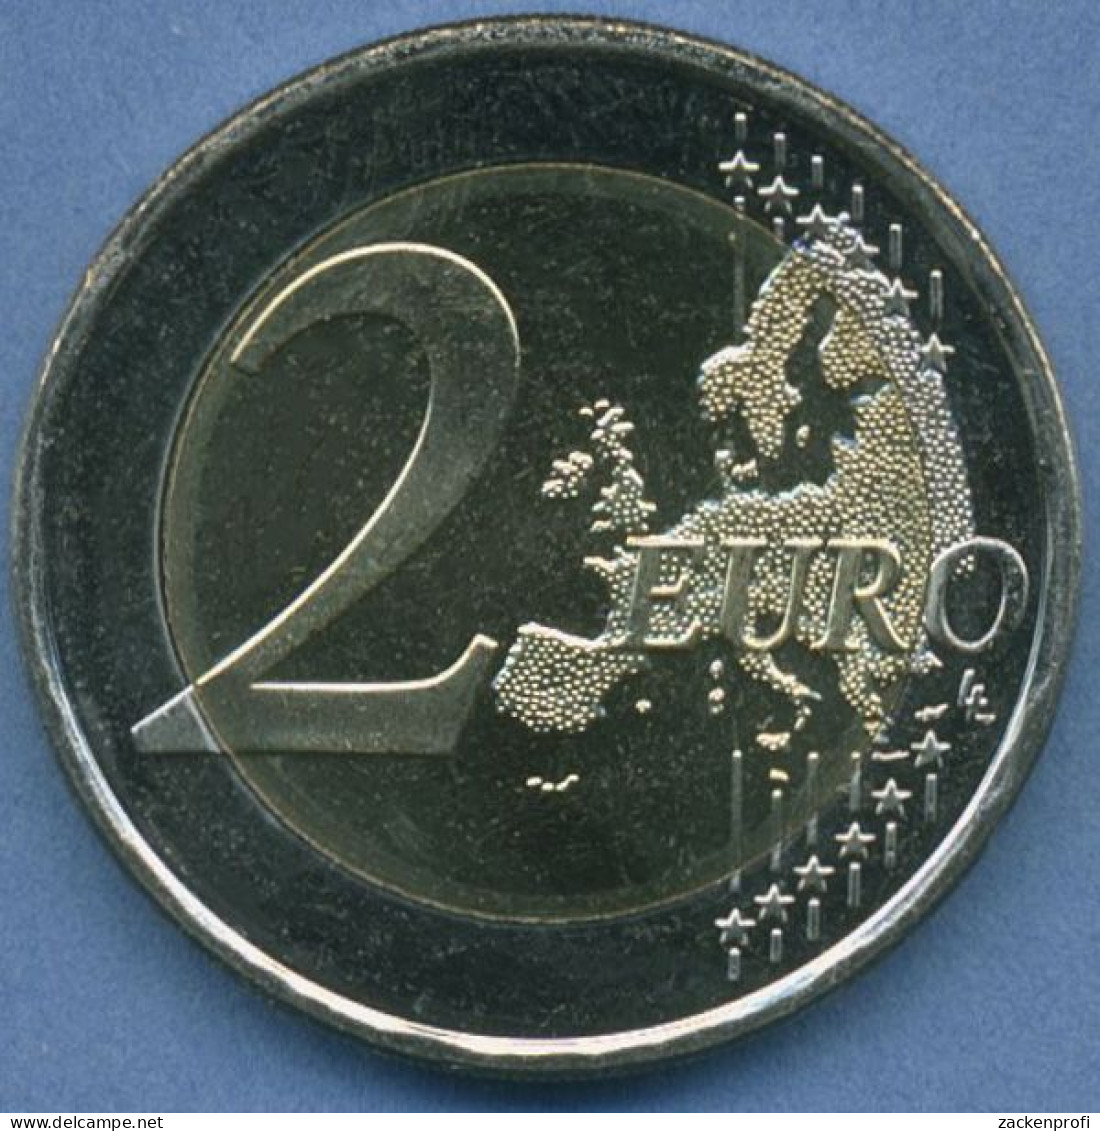 Lettland 2 Euro 2015 EU-Präsidentschaft, Vz/st (m4975) - Lettland